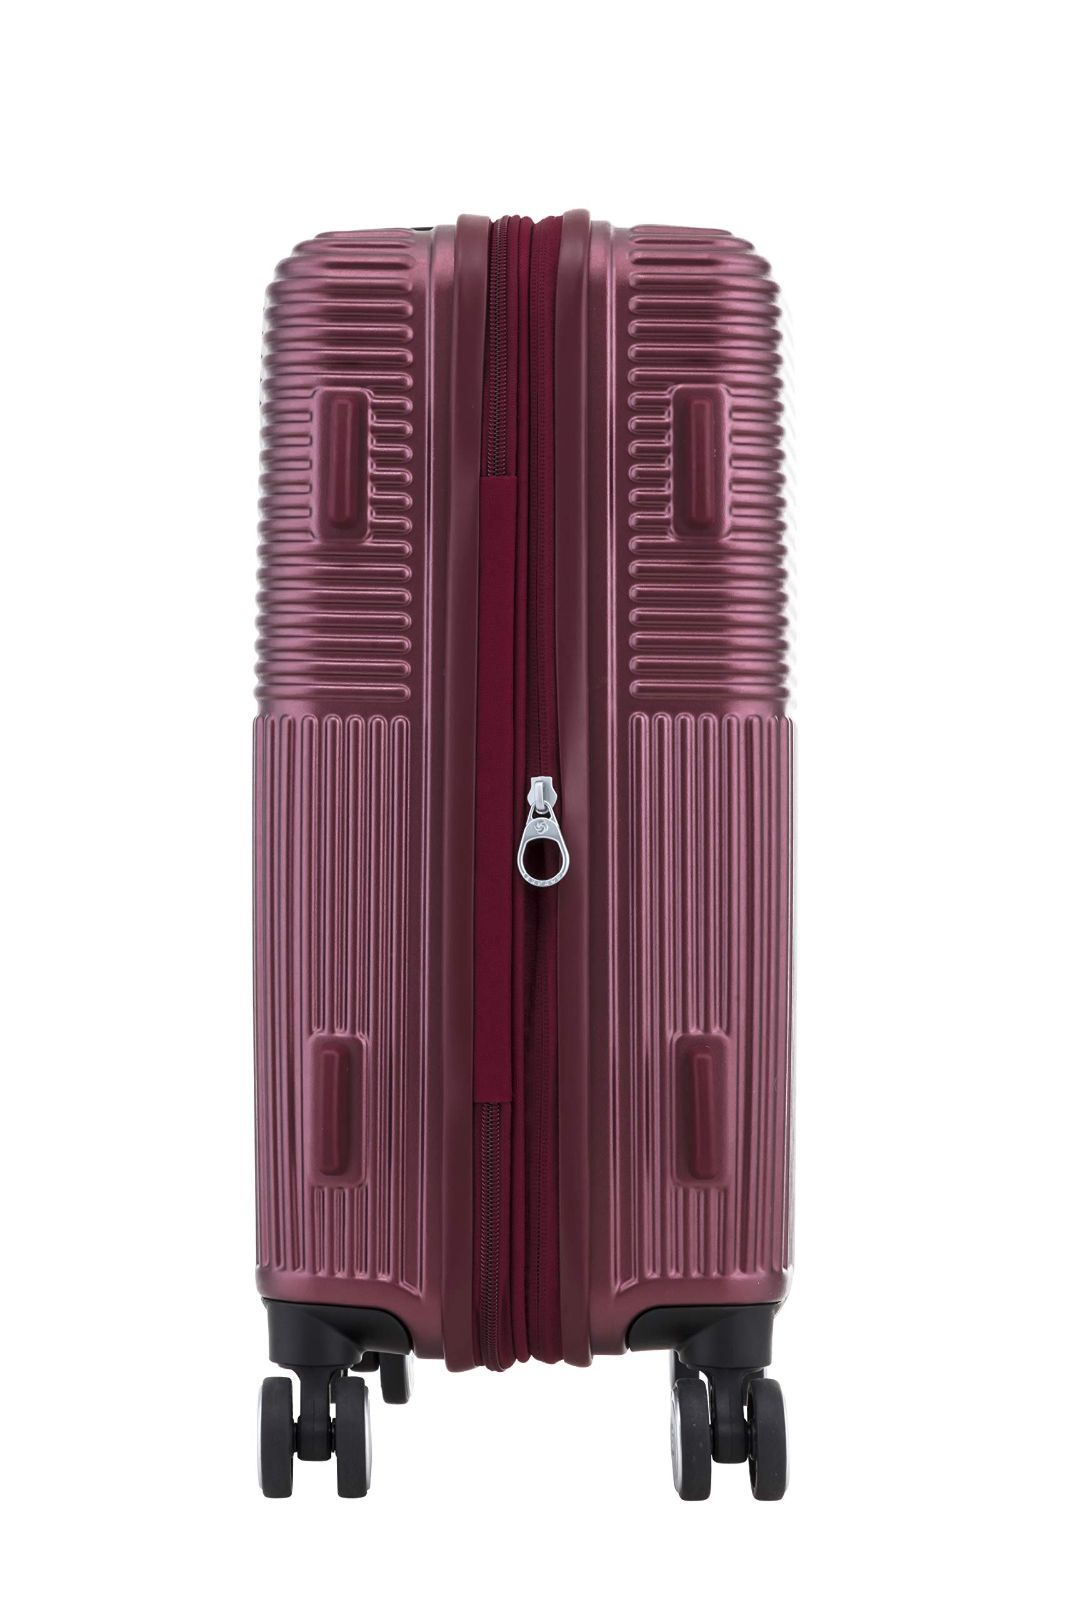 サムソナイト] スーツケース キャリーケース レクサ REXA スピナー 55/20 36L 55 cm 3kg エキスパンダブル 機内持ち込み可 -  旅行用品